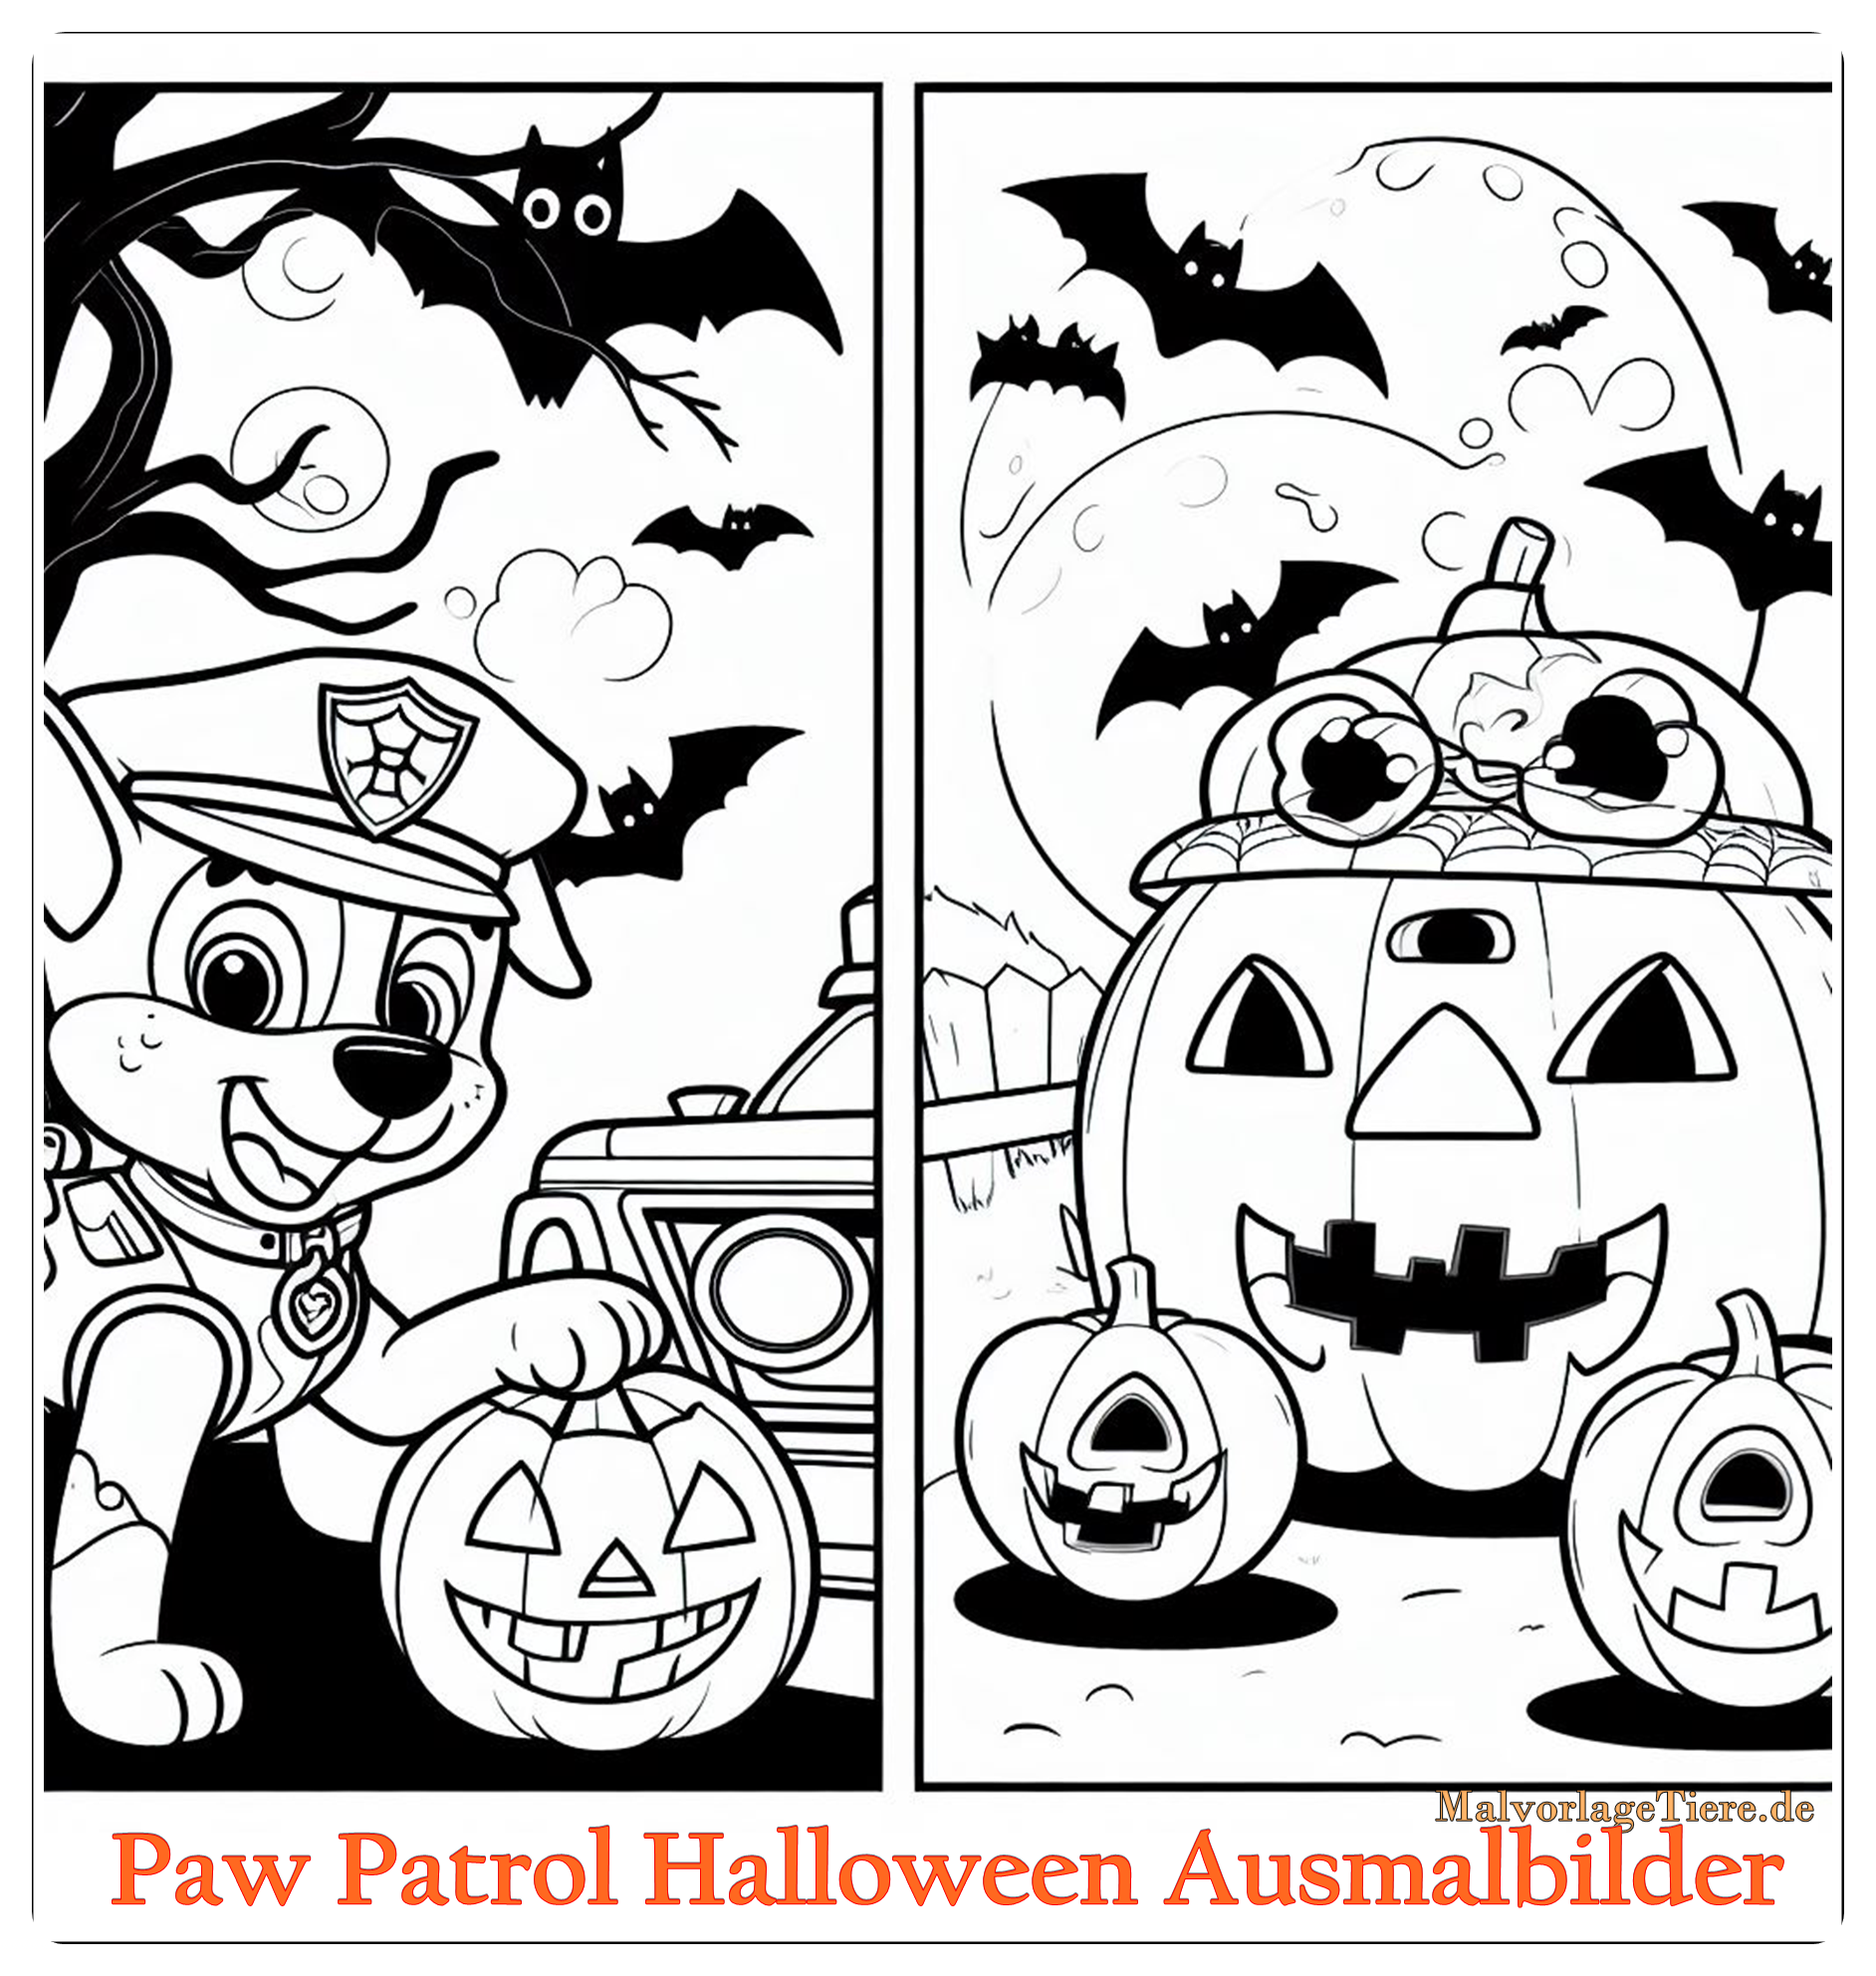 Paw Patrol Halloween Ausmalbilder 04 by malvorlagetiere.de